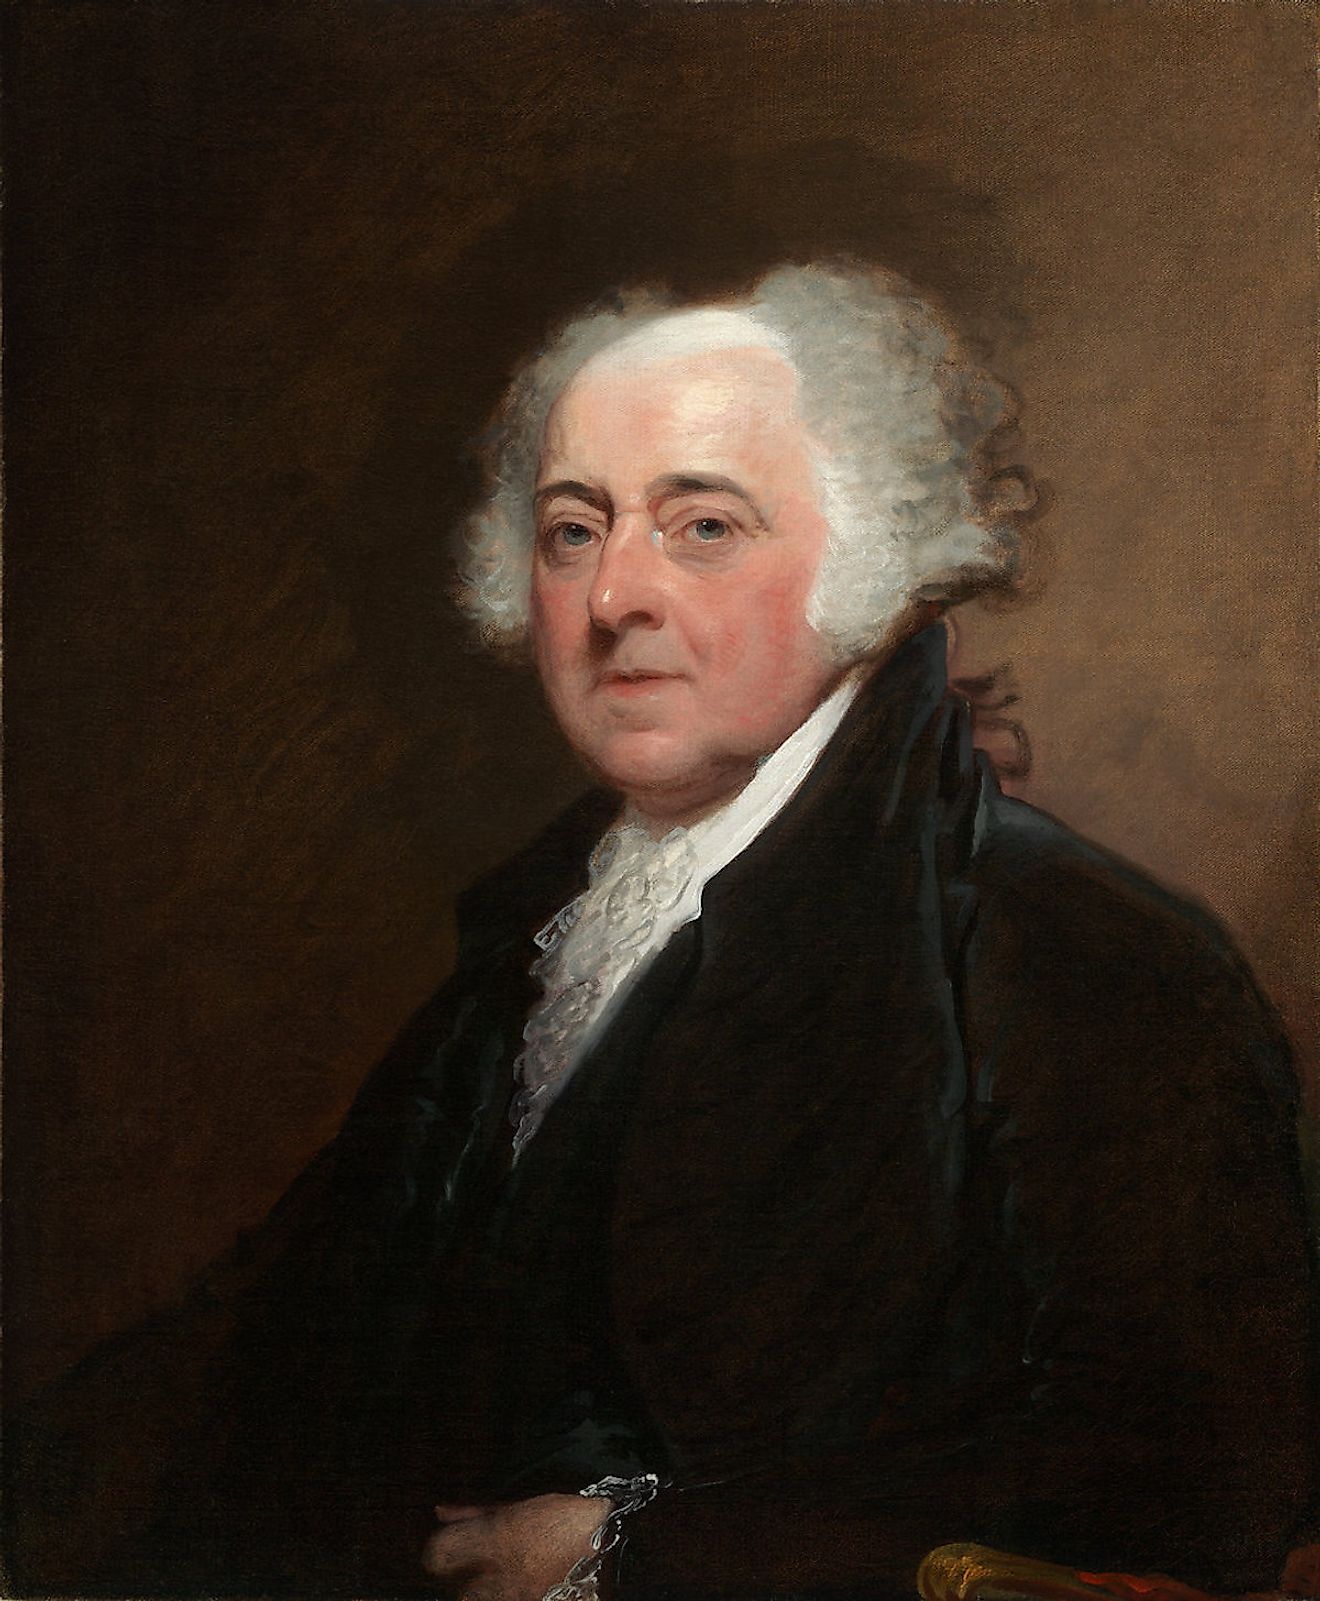 John Adams. Image credit: Gilbert Stuart/Public domain